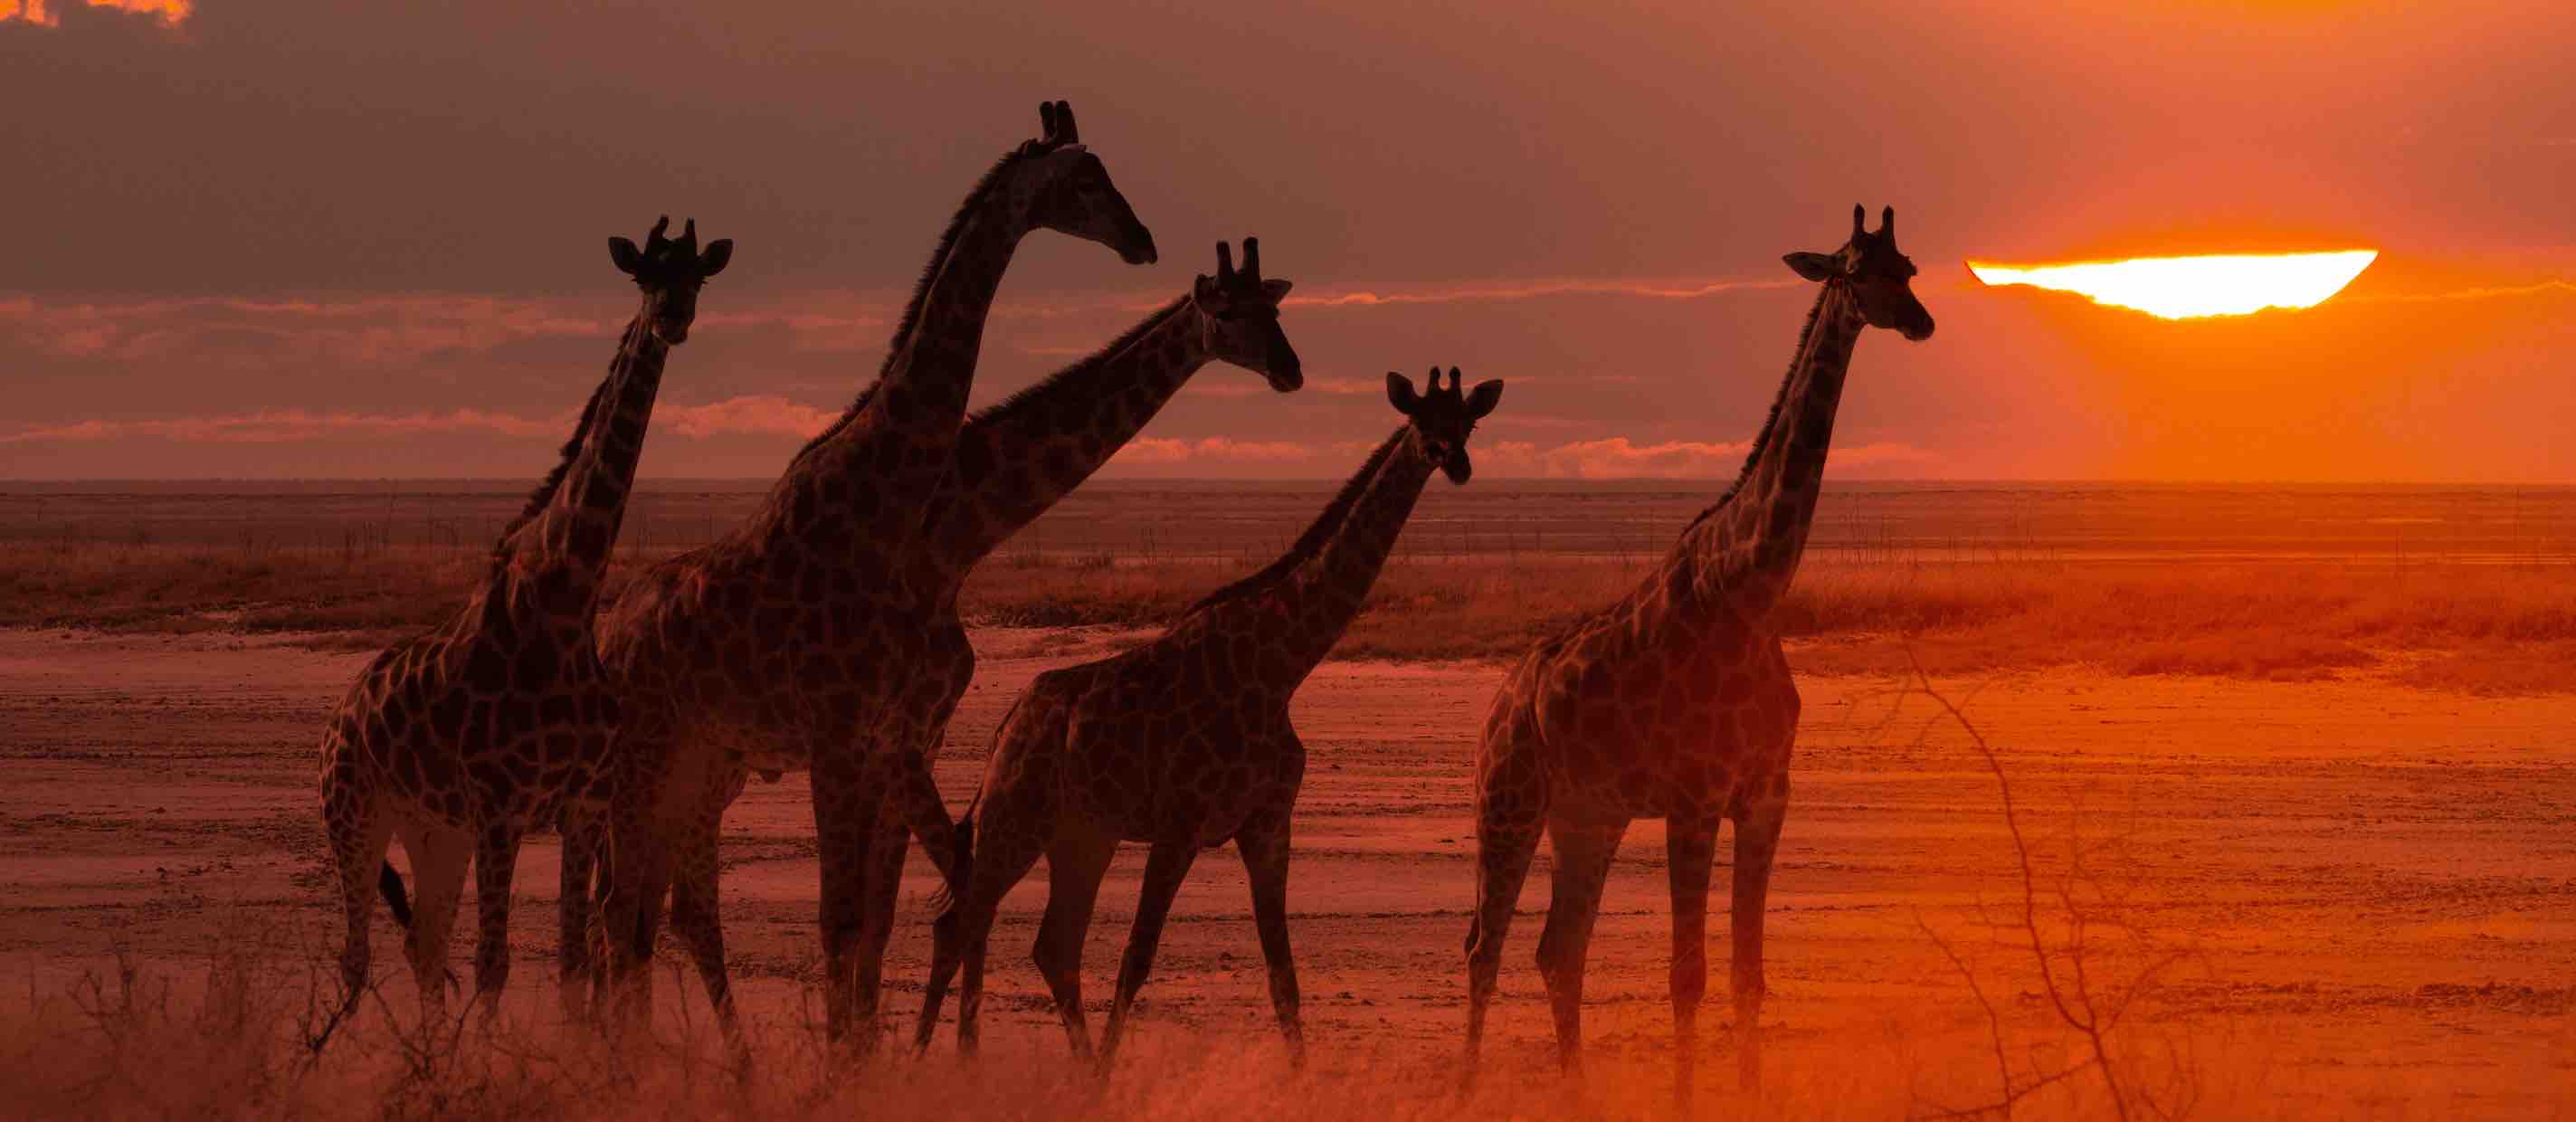 Giraffes - high risk of extinction